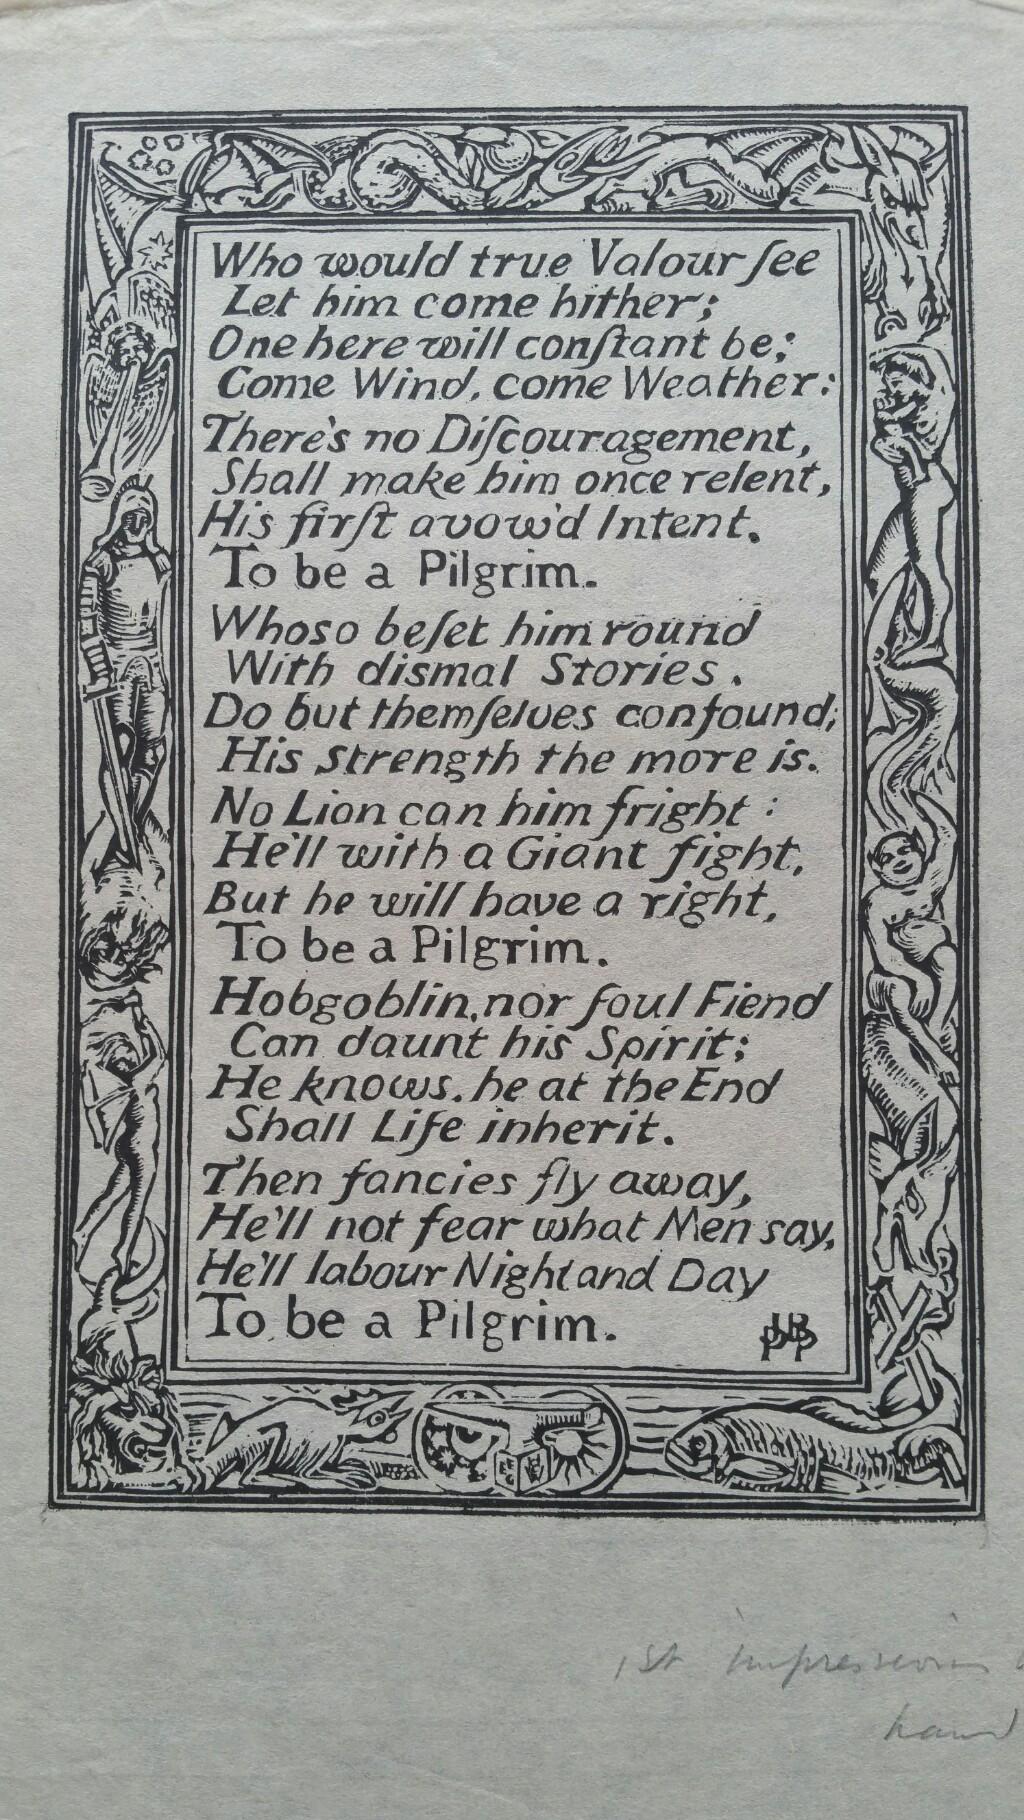 English Antique Woodcut Engraving, Inscribed, of Bunyan Hymn